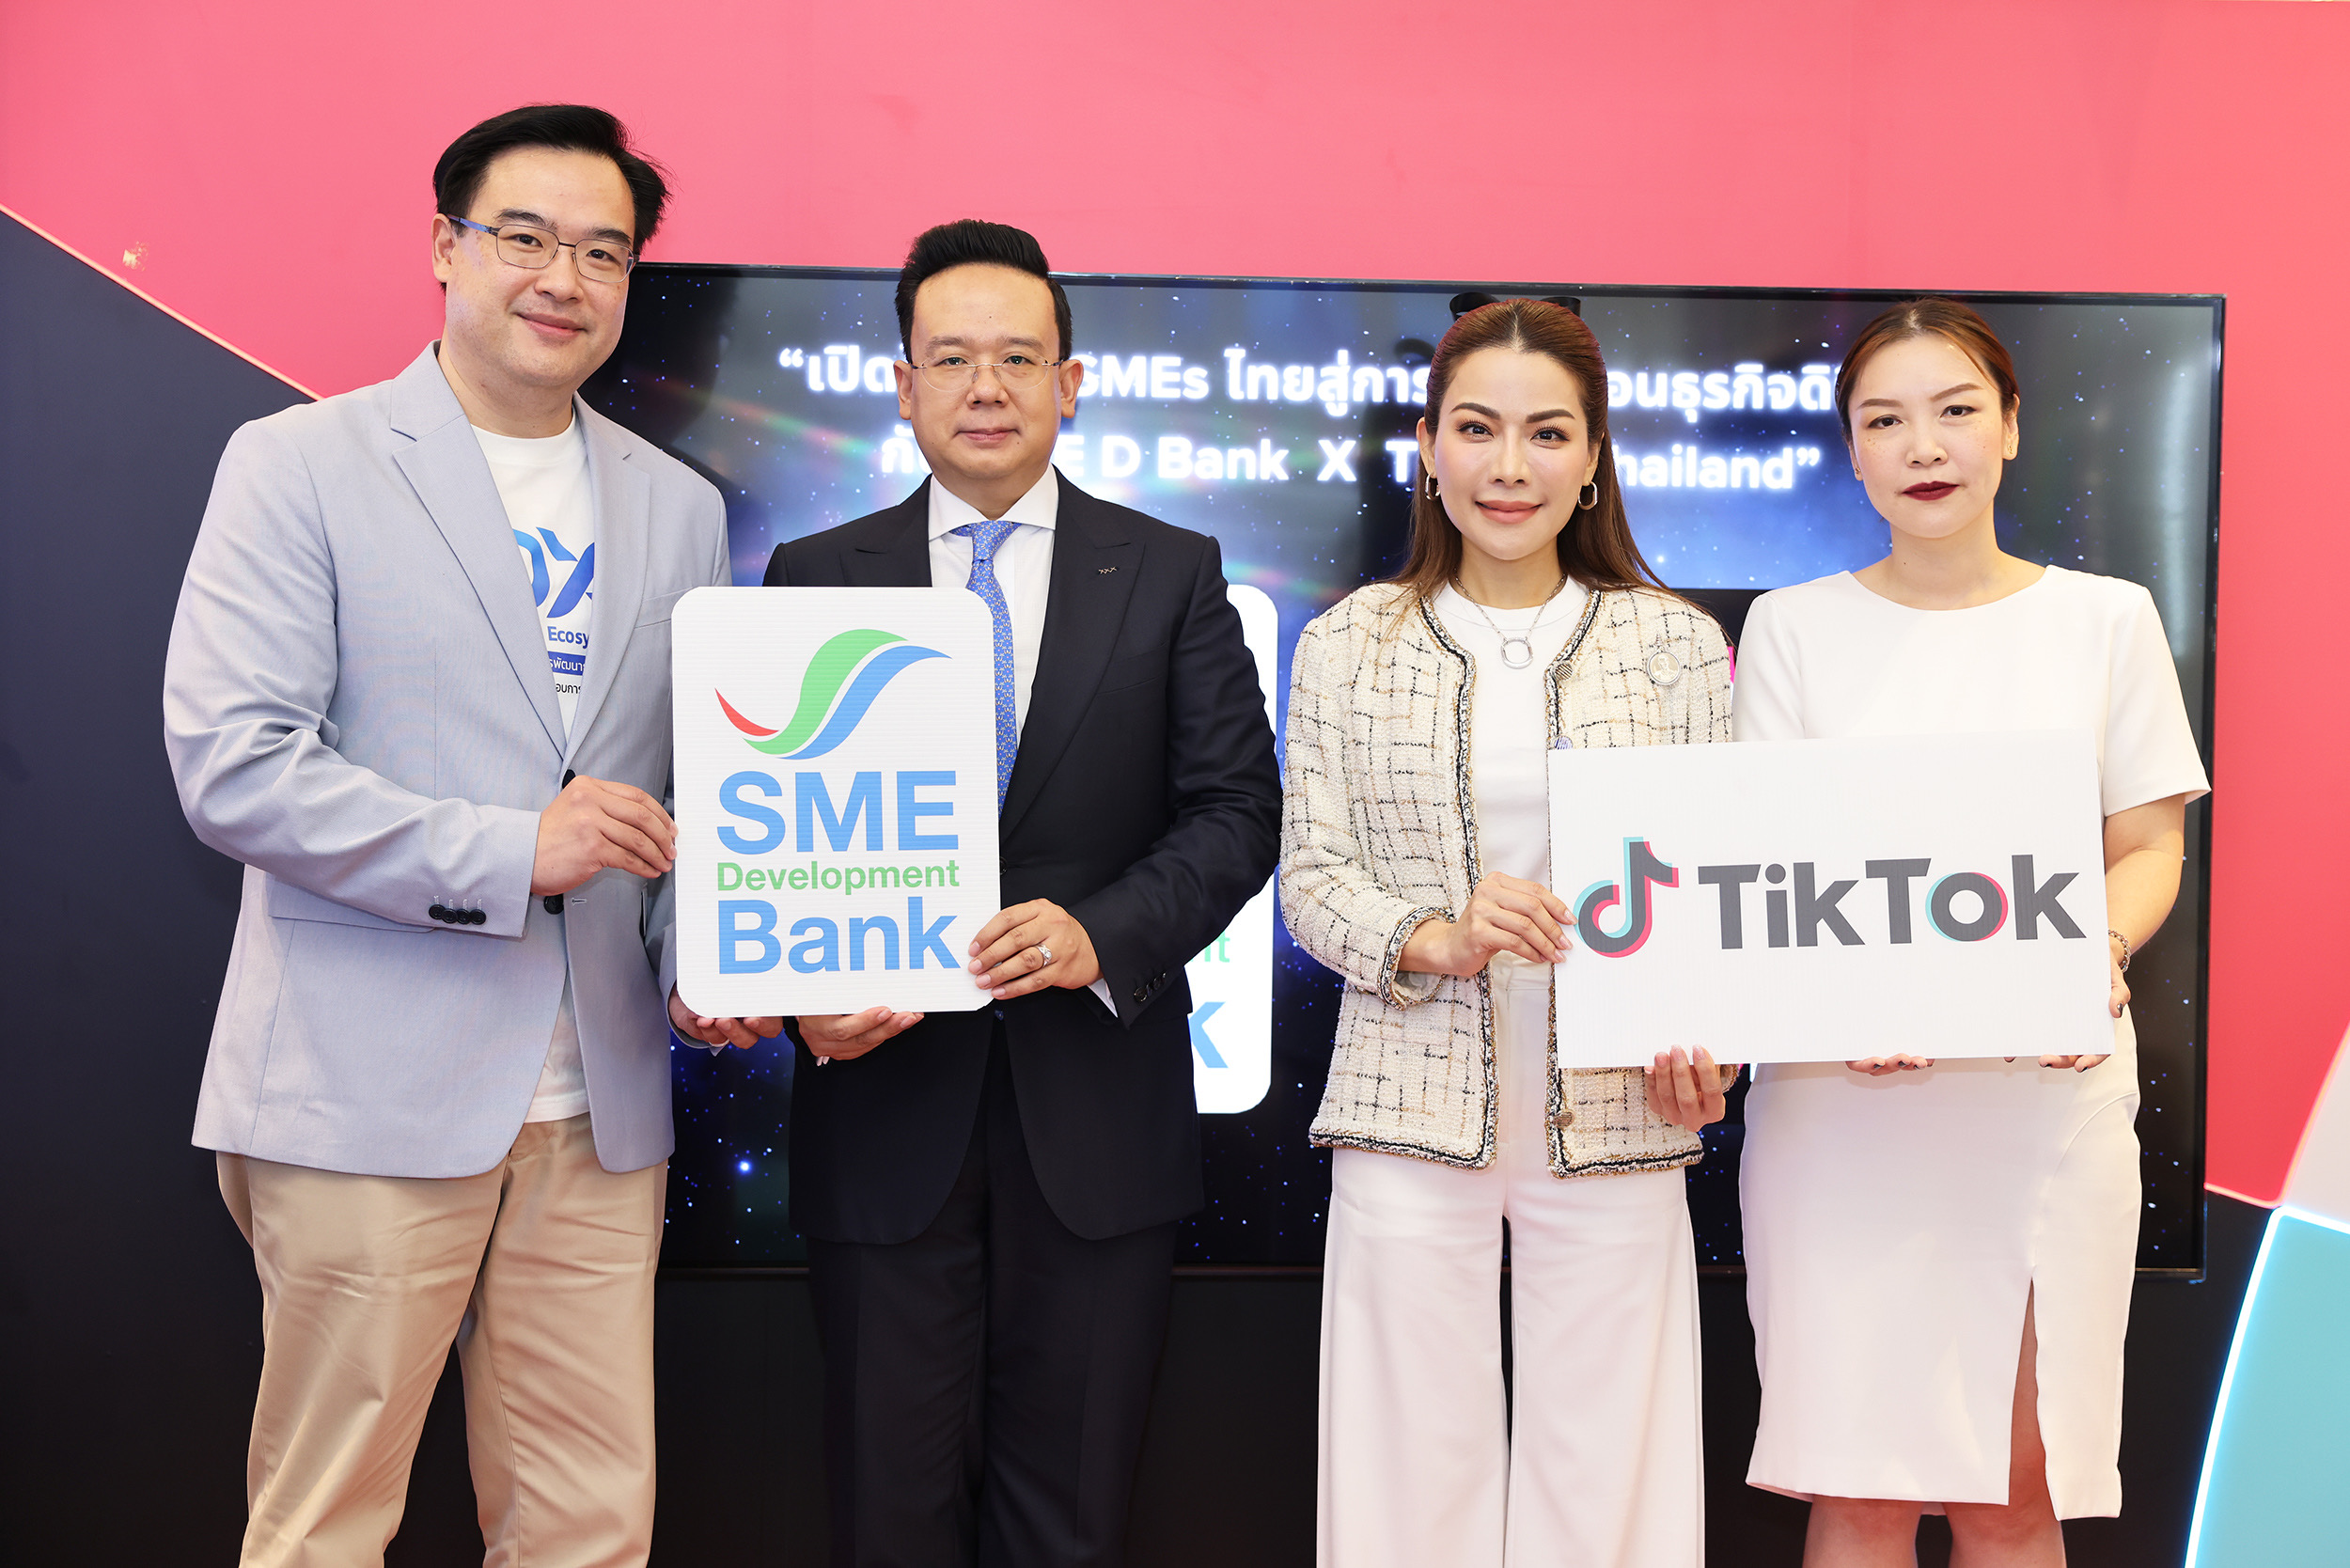 SME D Bank ดันเอสเอ็มอีขยายตลาด “TikTok for Business” พาเข้าถึงแหล่งทุน